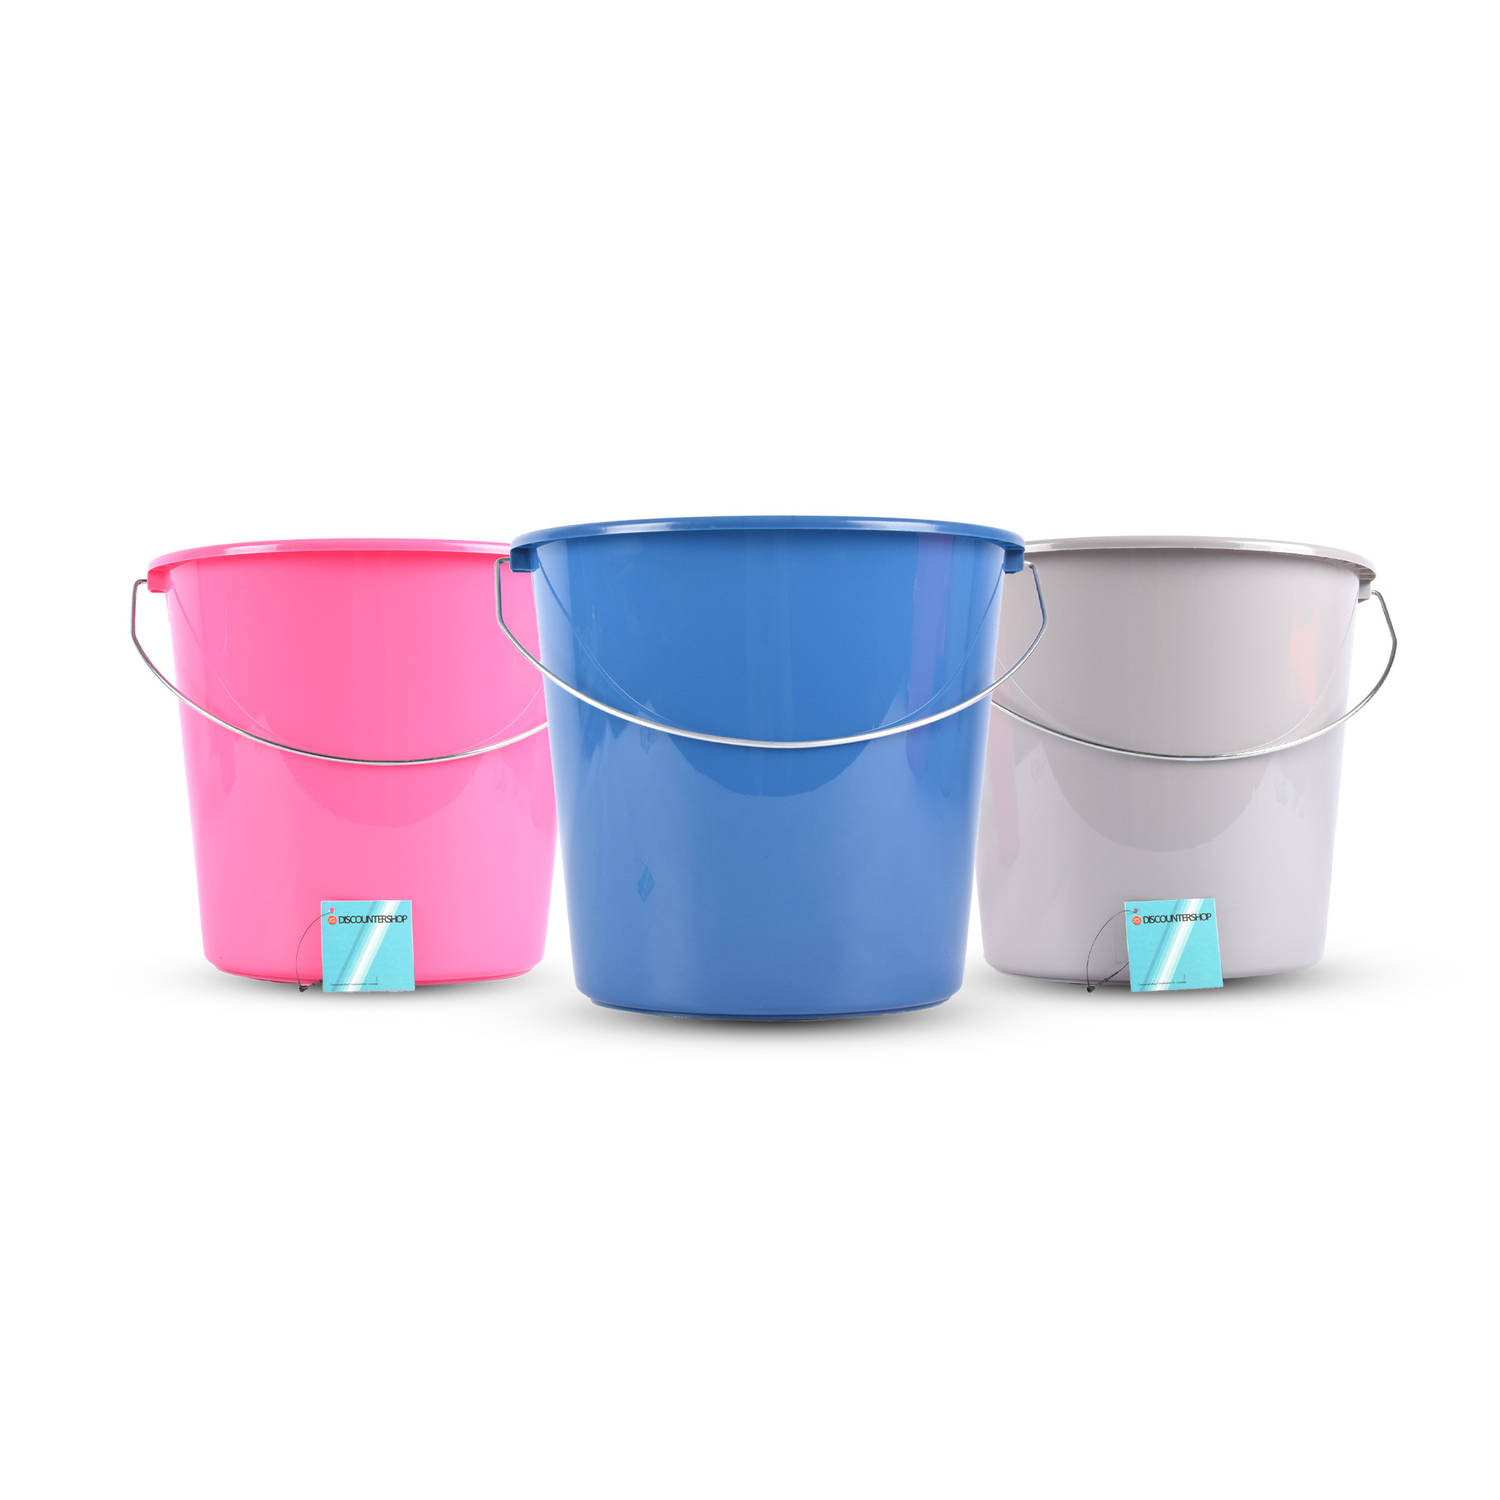 Set van 3 Plastic Emmers - 10 Liter Capaciteit elke Wasemmer - Assortiment Kleuren (Roze, Grijs, Blauw) - 28cm x 28cm x 25cm - Ideaal voor Schoonmaken, Klussen & Tuinieren!